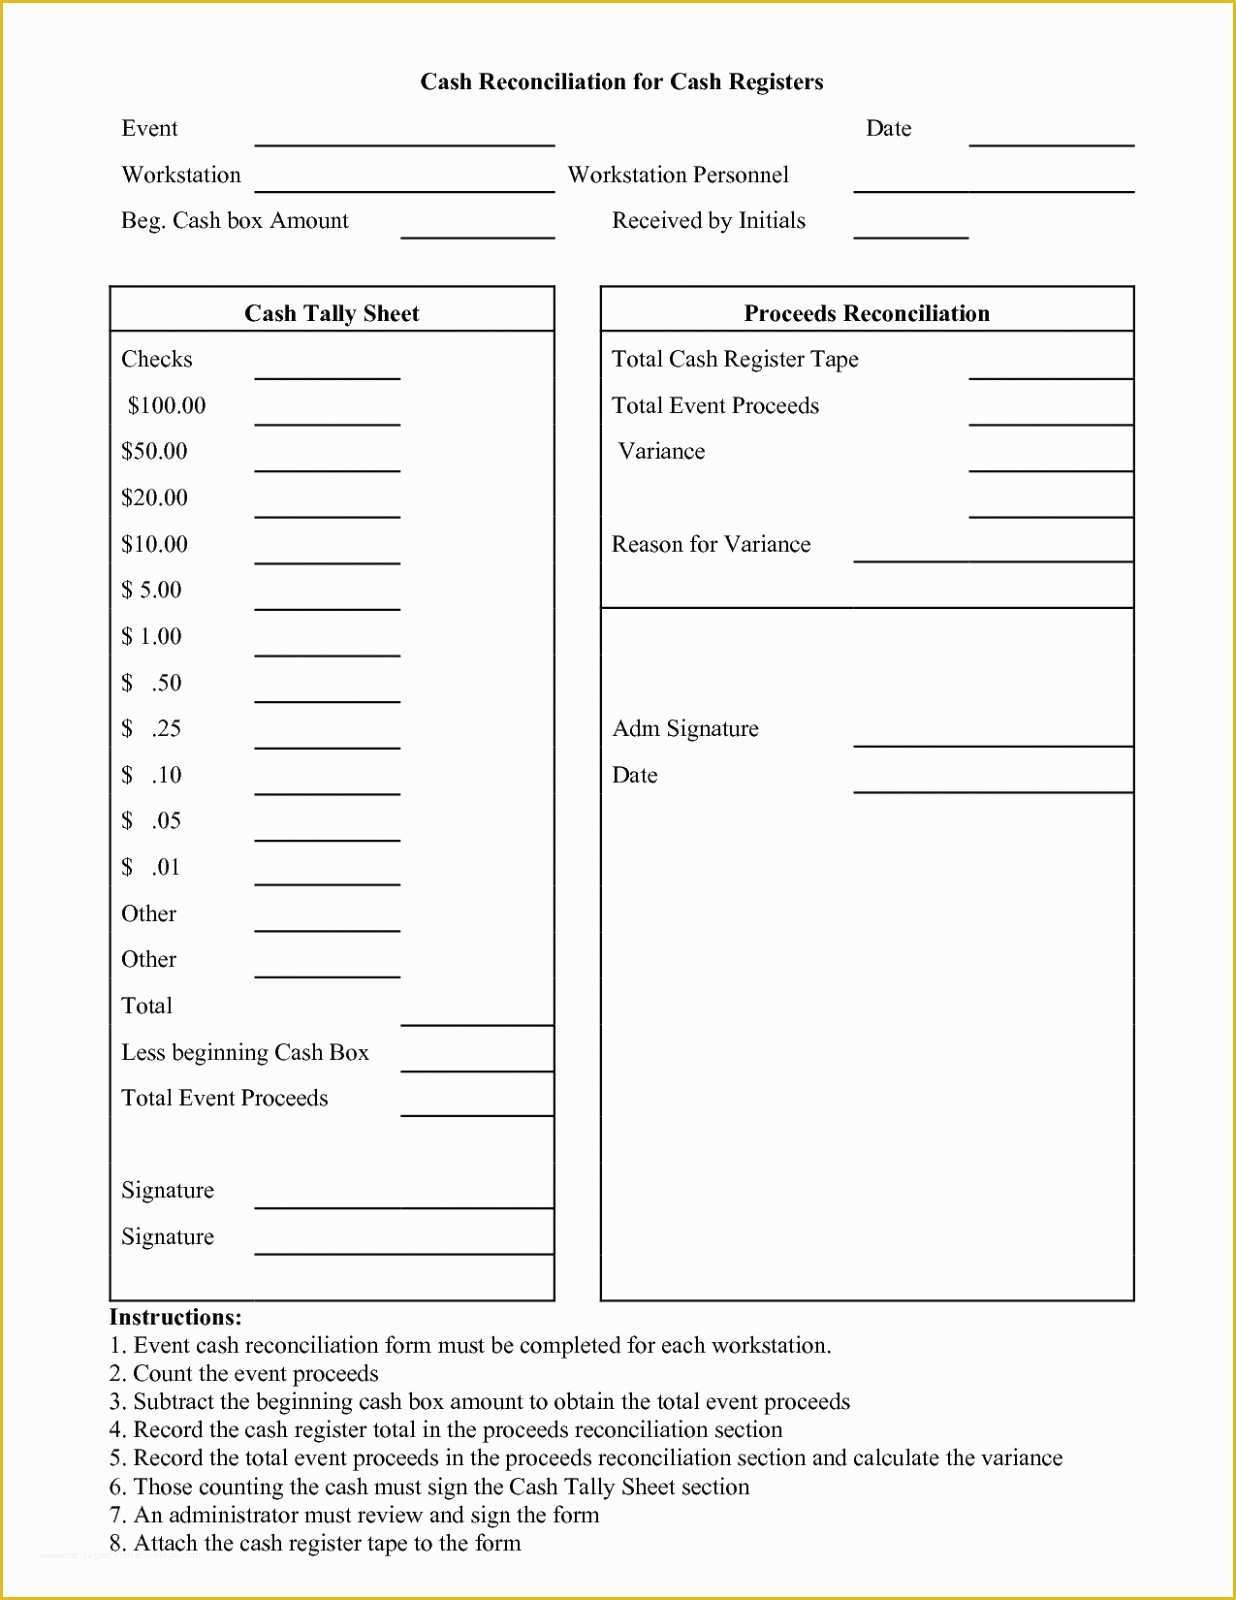 Free Cash Drawer Balance Sheet Template Of Cash Register Balance Sheet Template Free Daily for